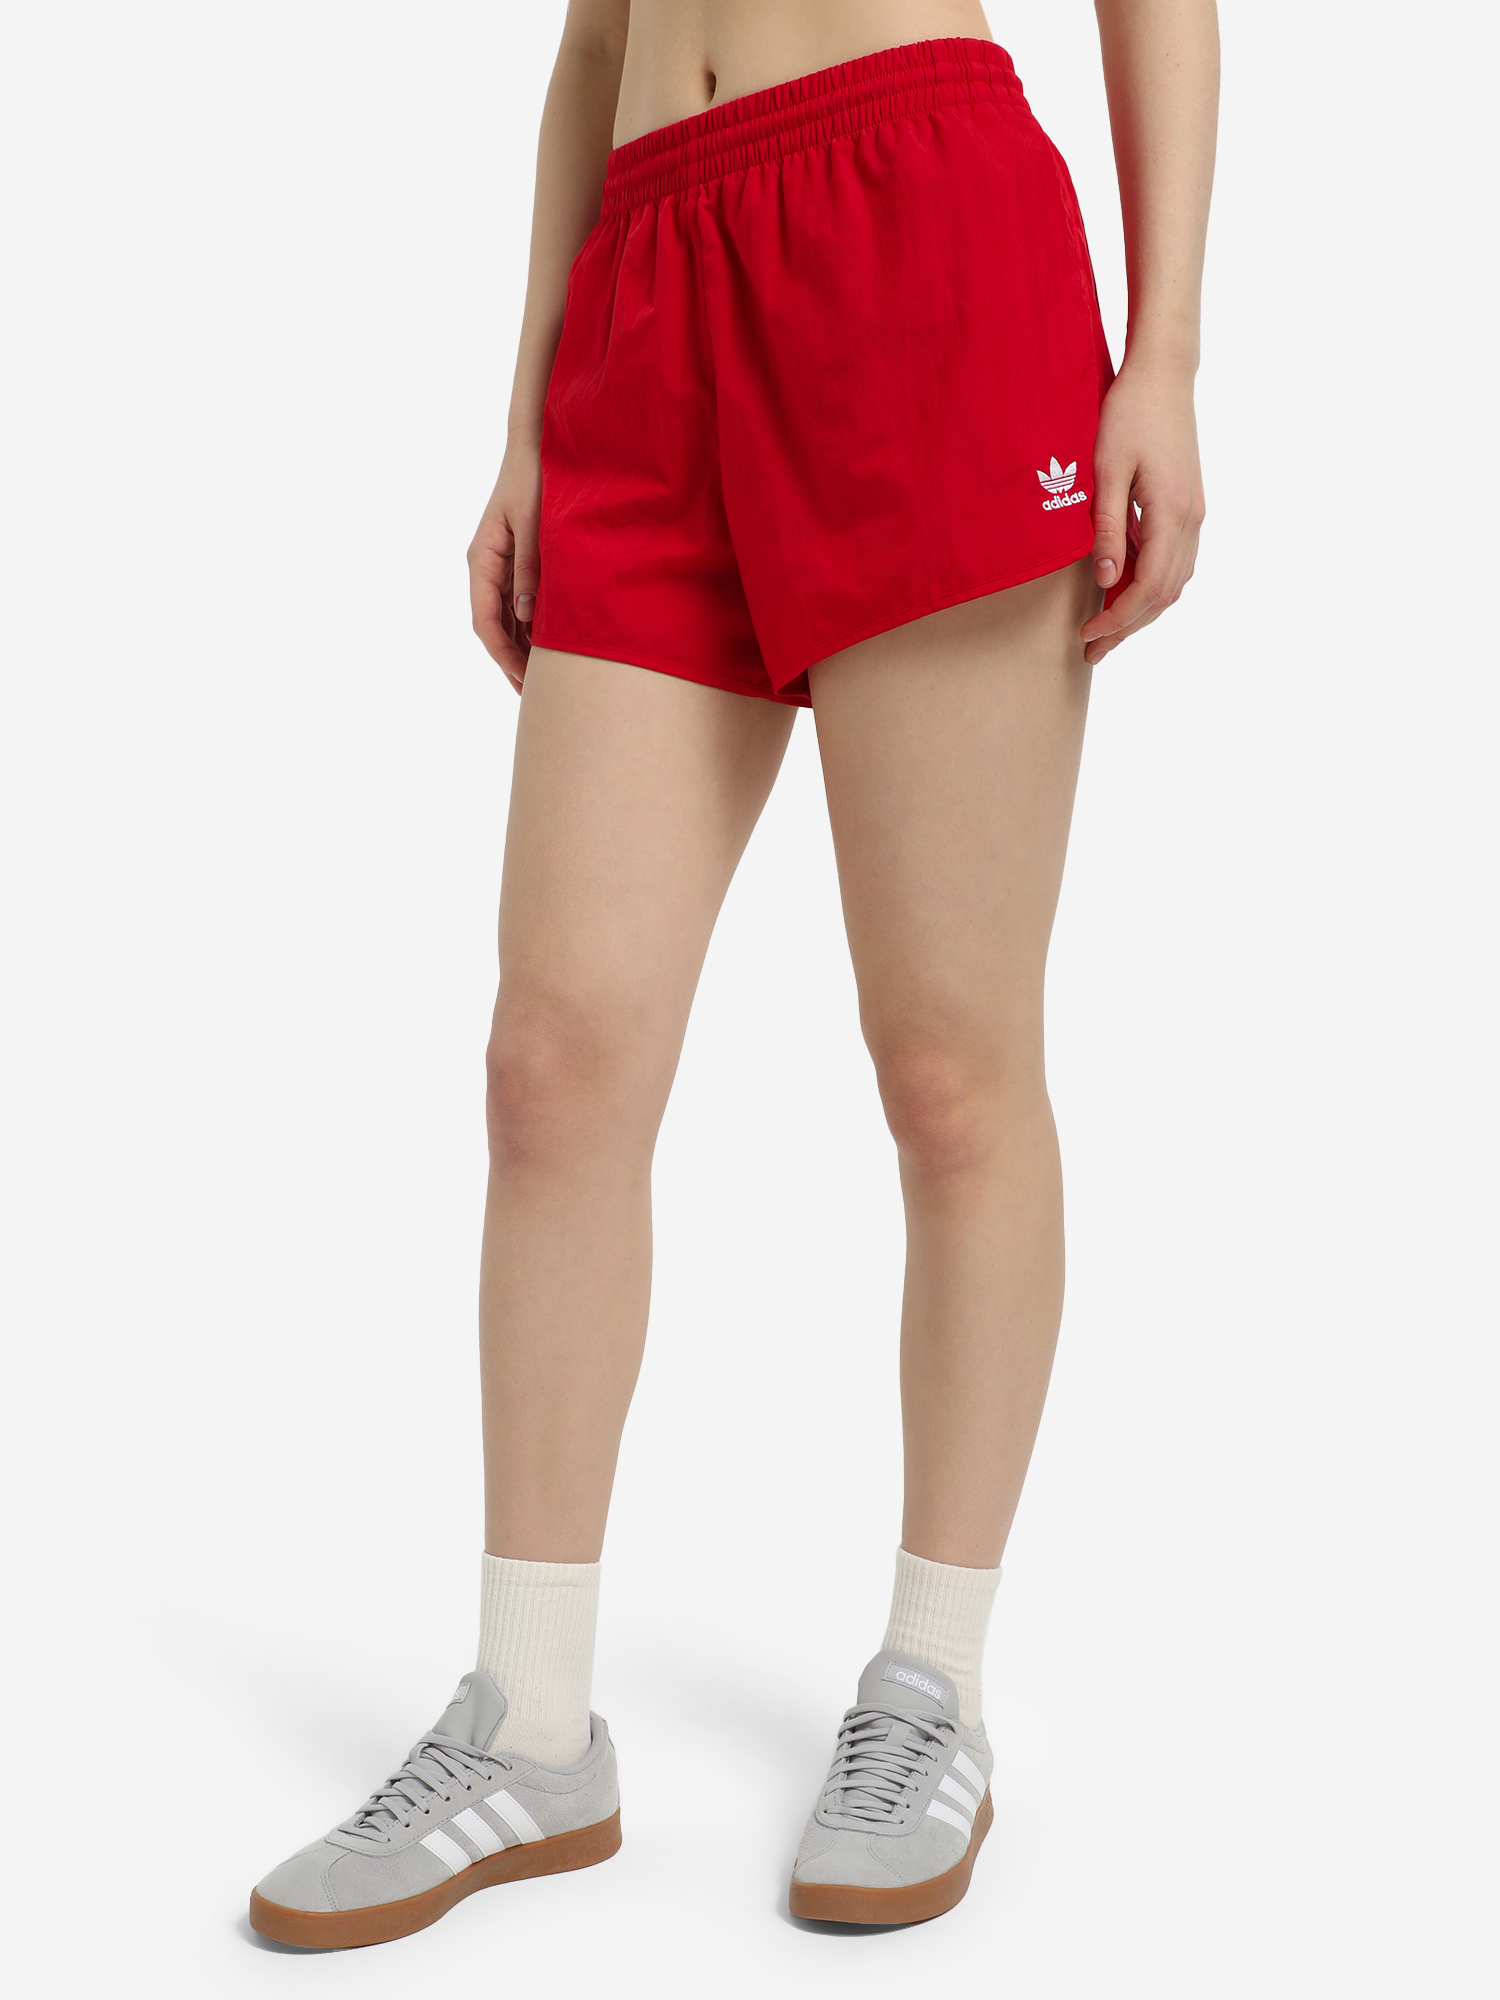 Шорты женские adidas 3-Stripes, Красный легинсы женские adidas optime красный